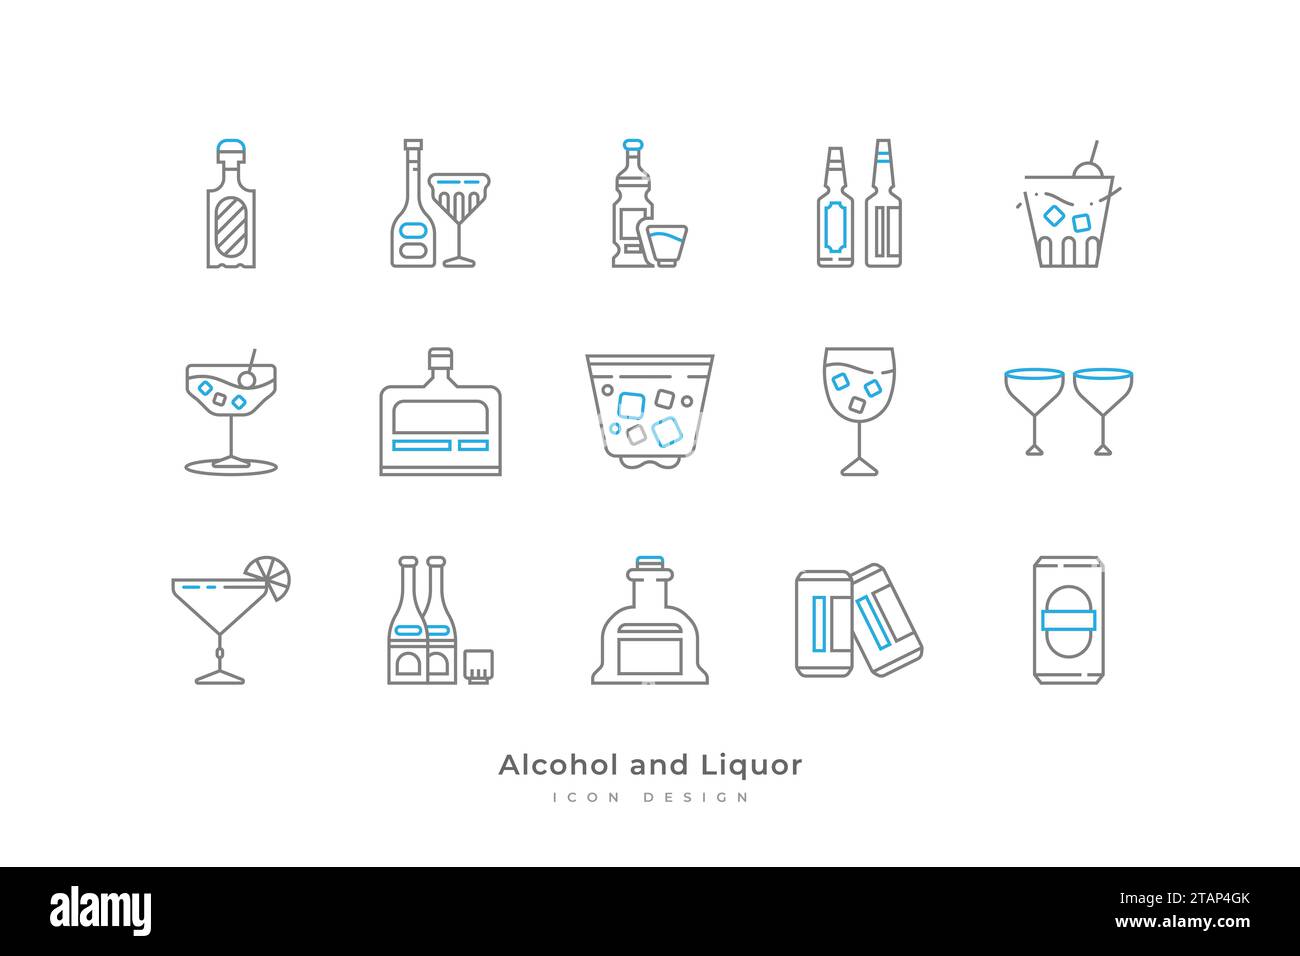 Alkohol und Alkohol Icon Set mit Simple Line Style. Enthält konserviertes Bier, Champagner, Cocktails, Whiskey und mehr Stock Vektor